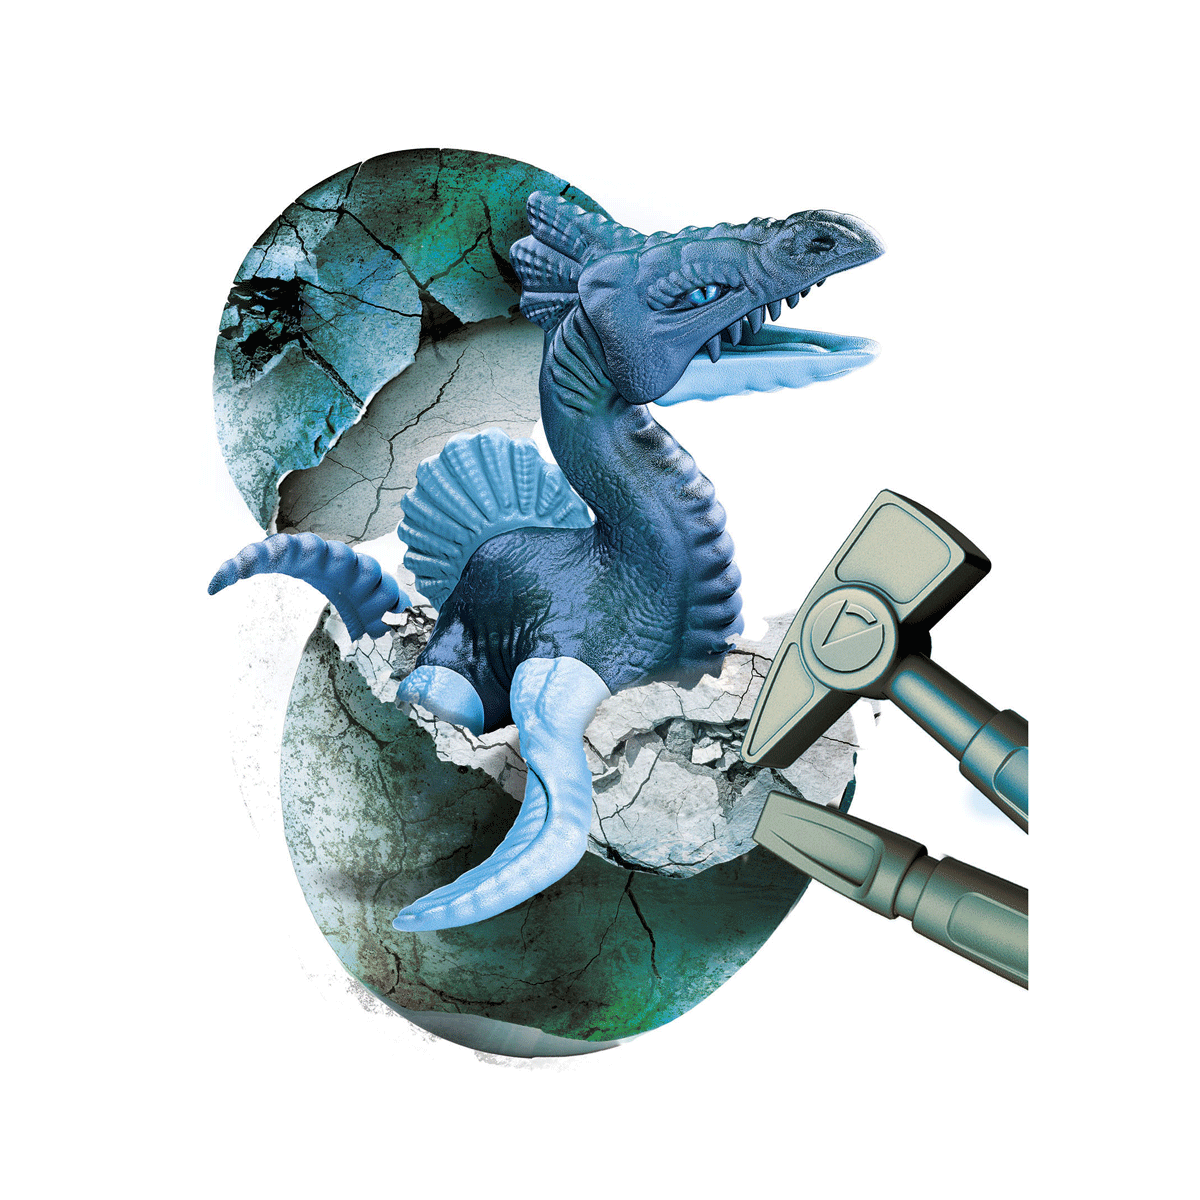 Clementoni - scienza e gioco fun - dig kit drago marino, gioco scientifico - Scienza e Gioco